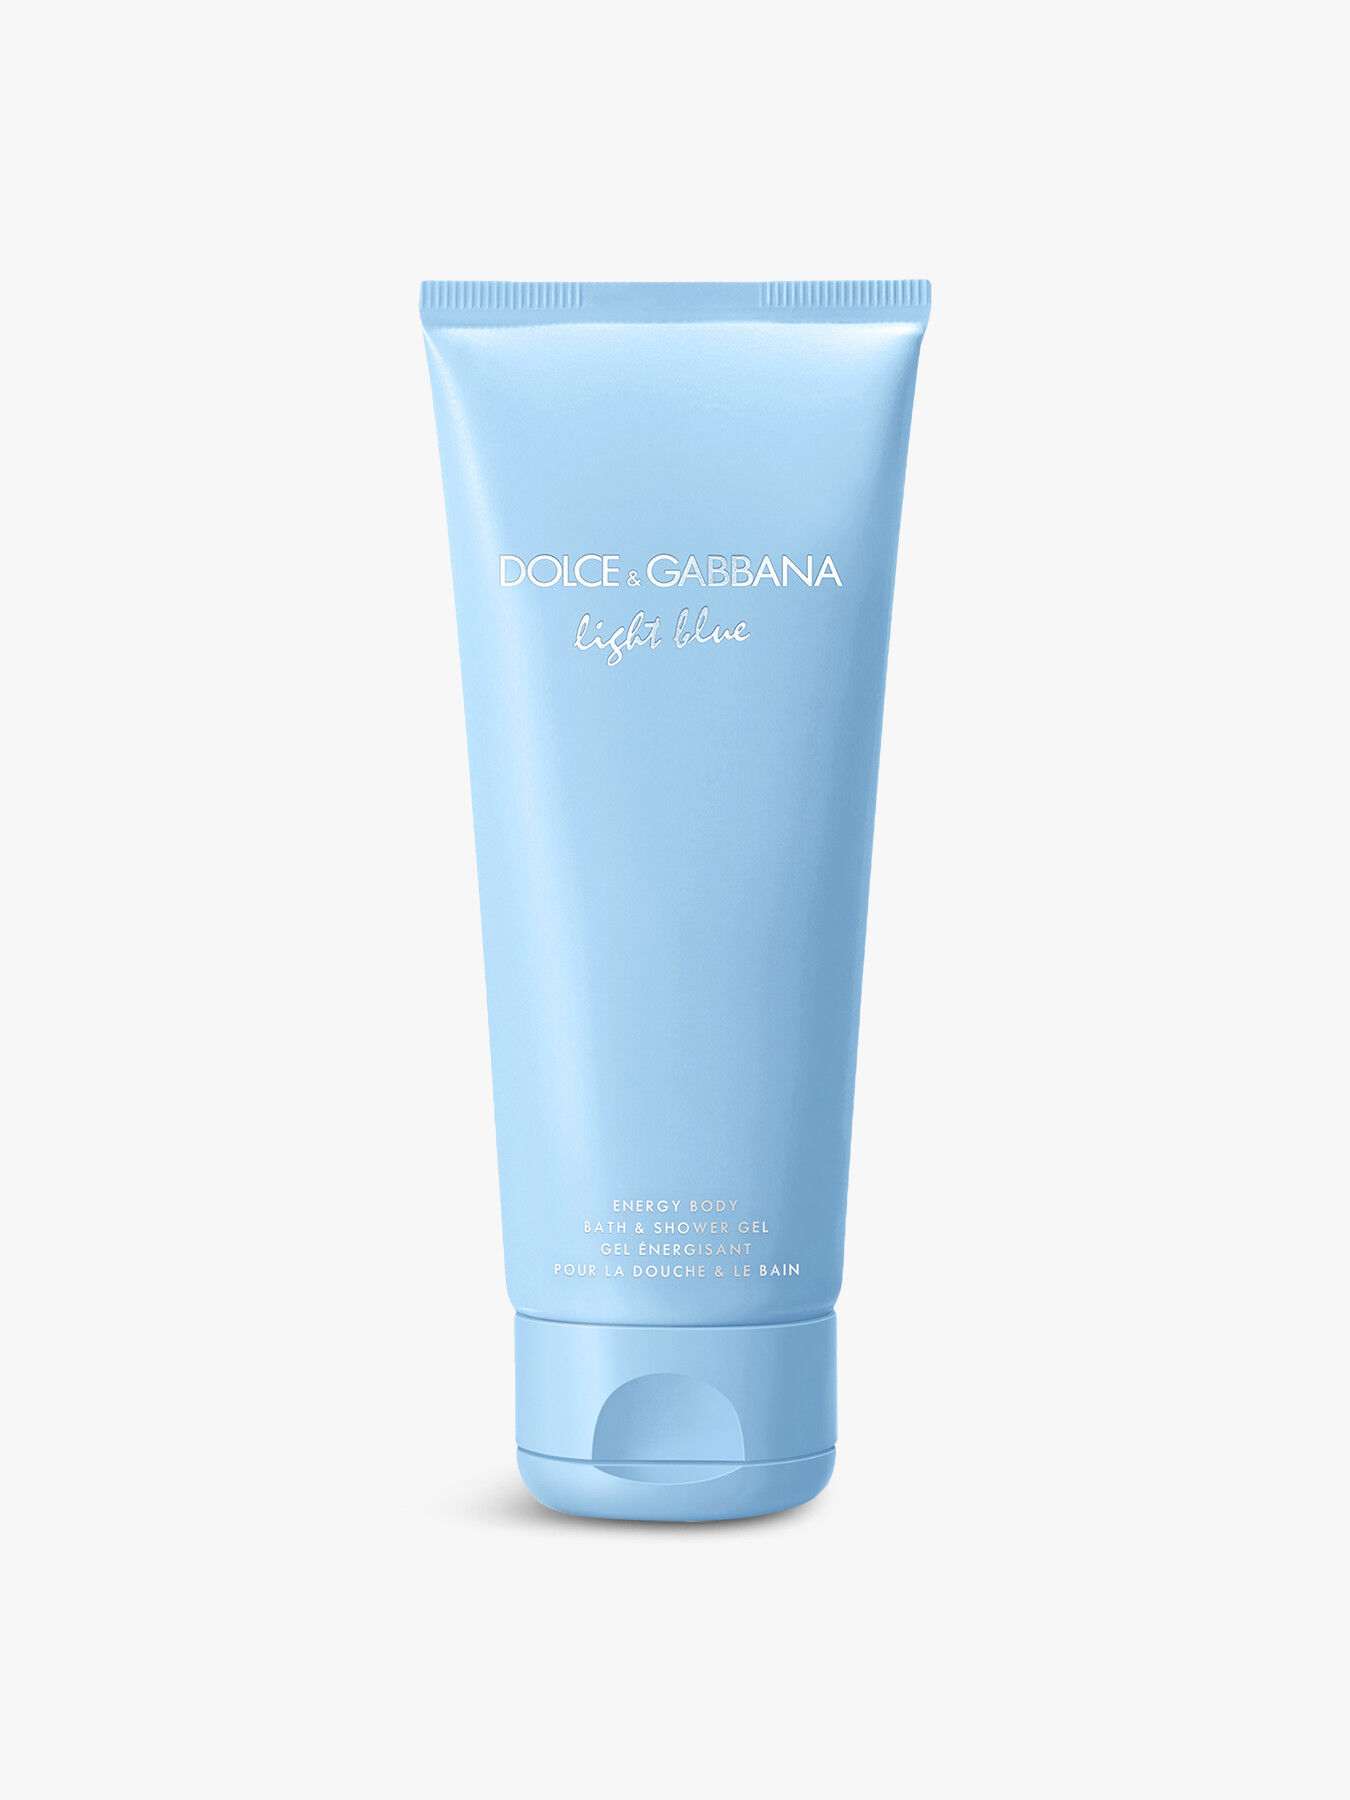 dolce and gabbana light blue shower gel